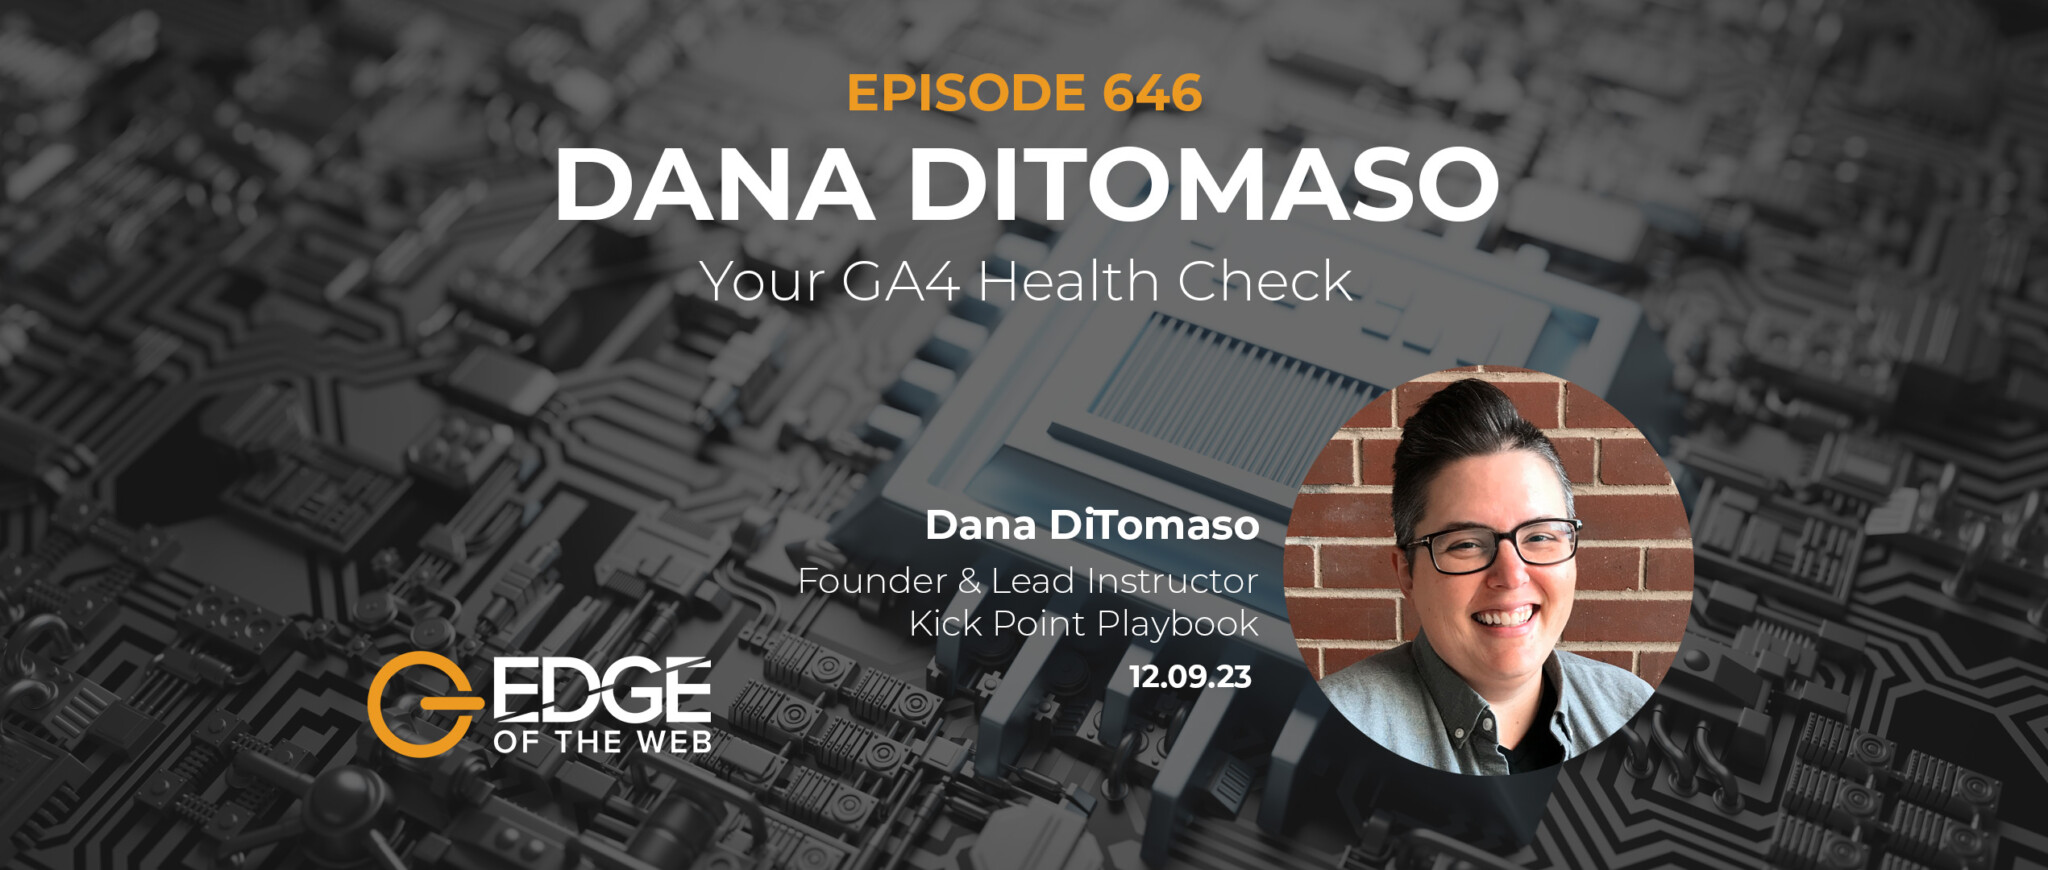 Episode 646: Your GA4 Health Check with Dana DiTomaso